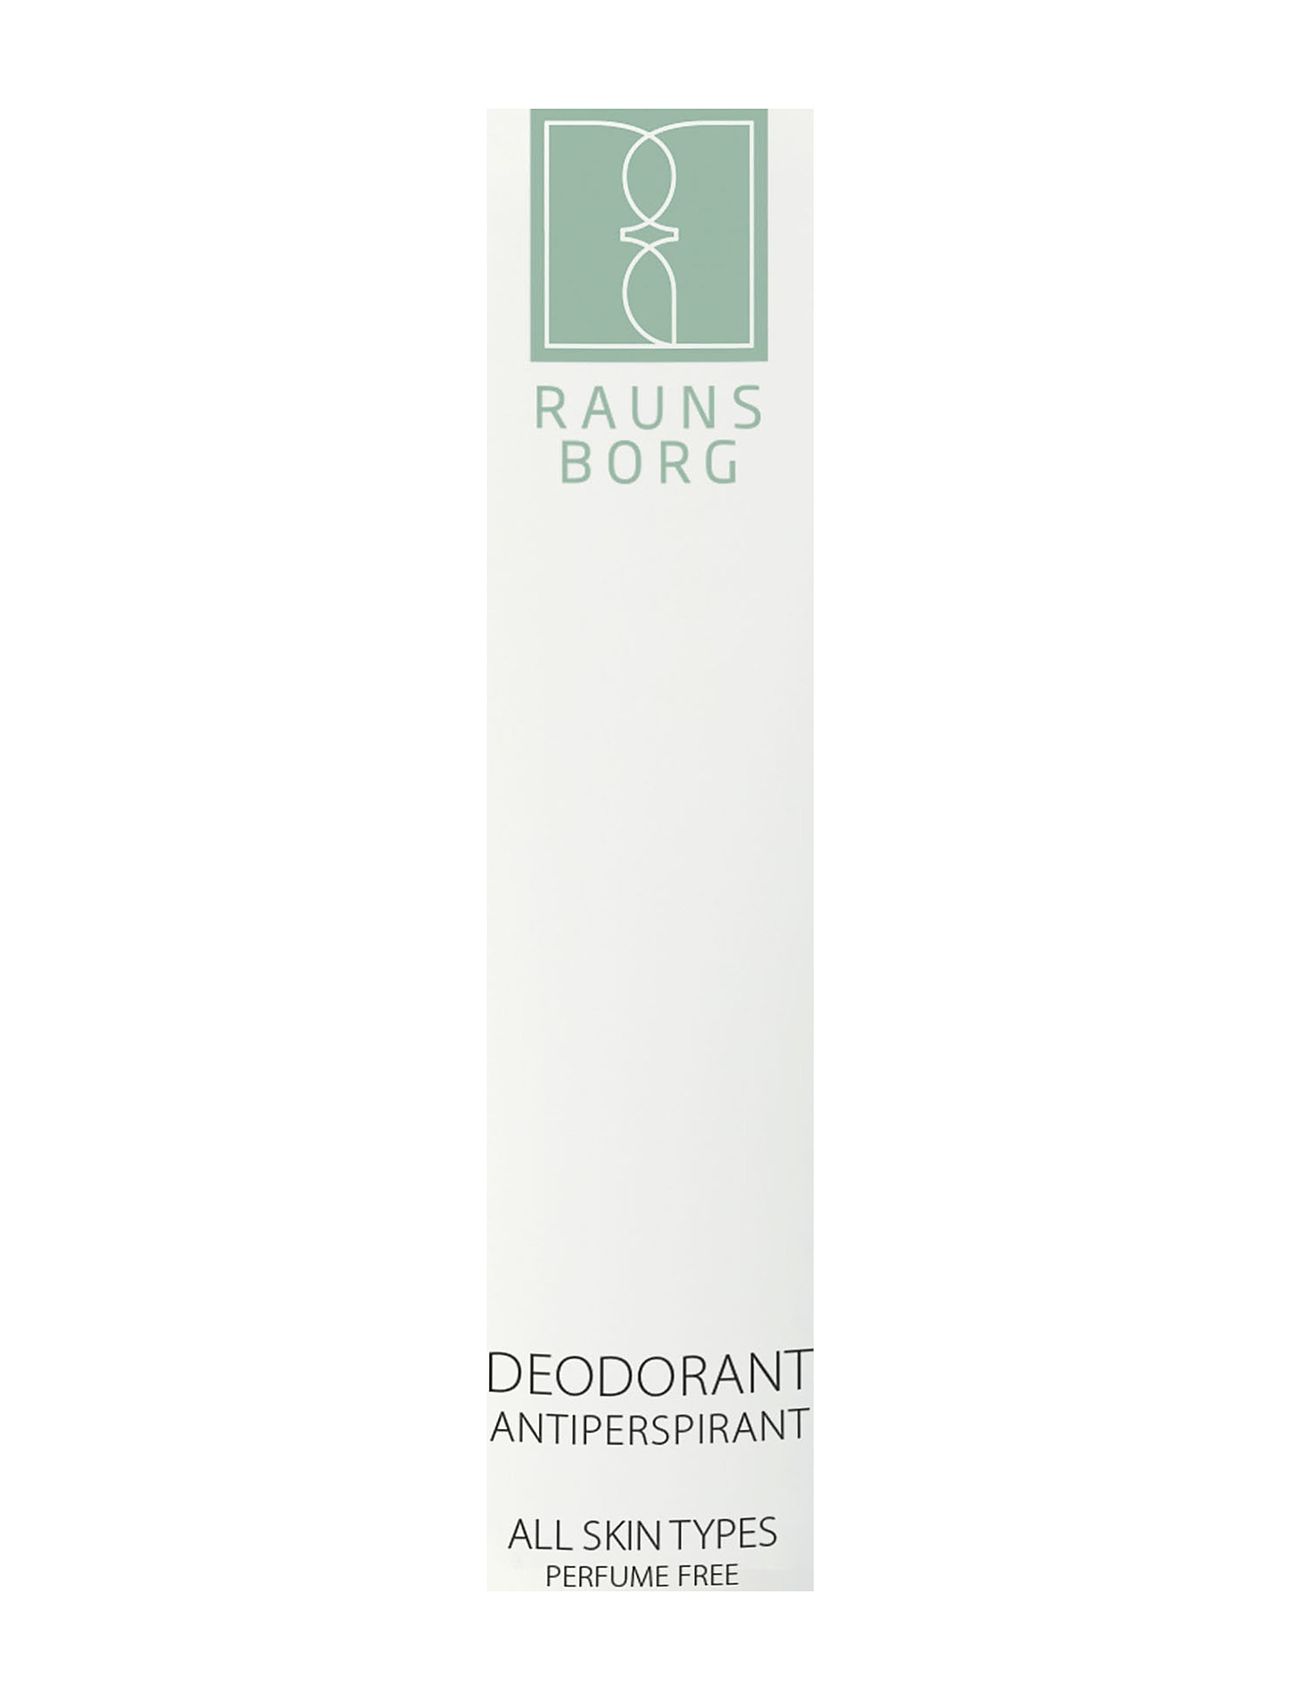 Deo Roll-On Antiperspirant - Perfumefree Deodorant Roll-on Nude Raunsborg